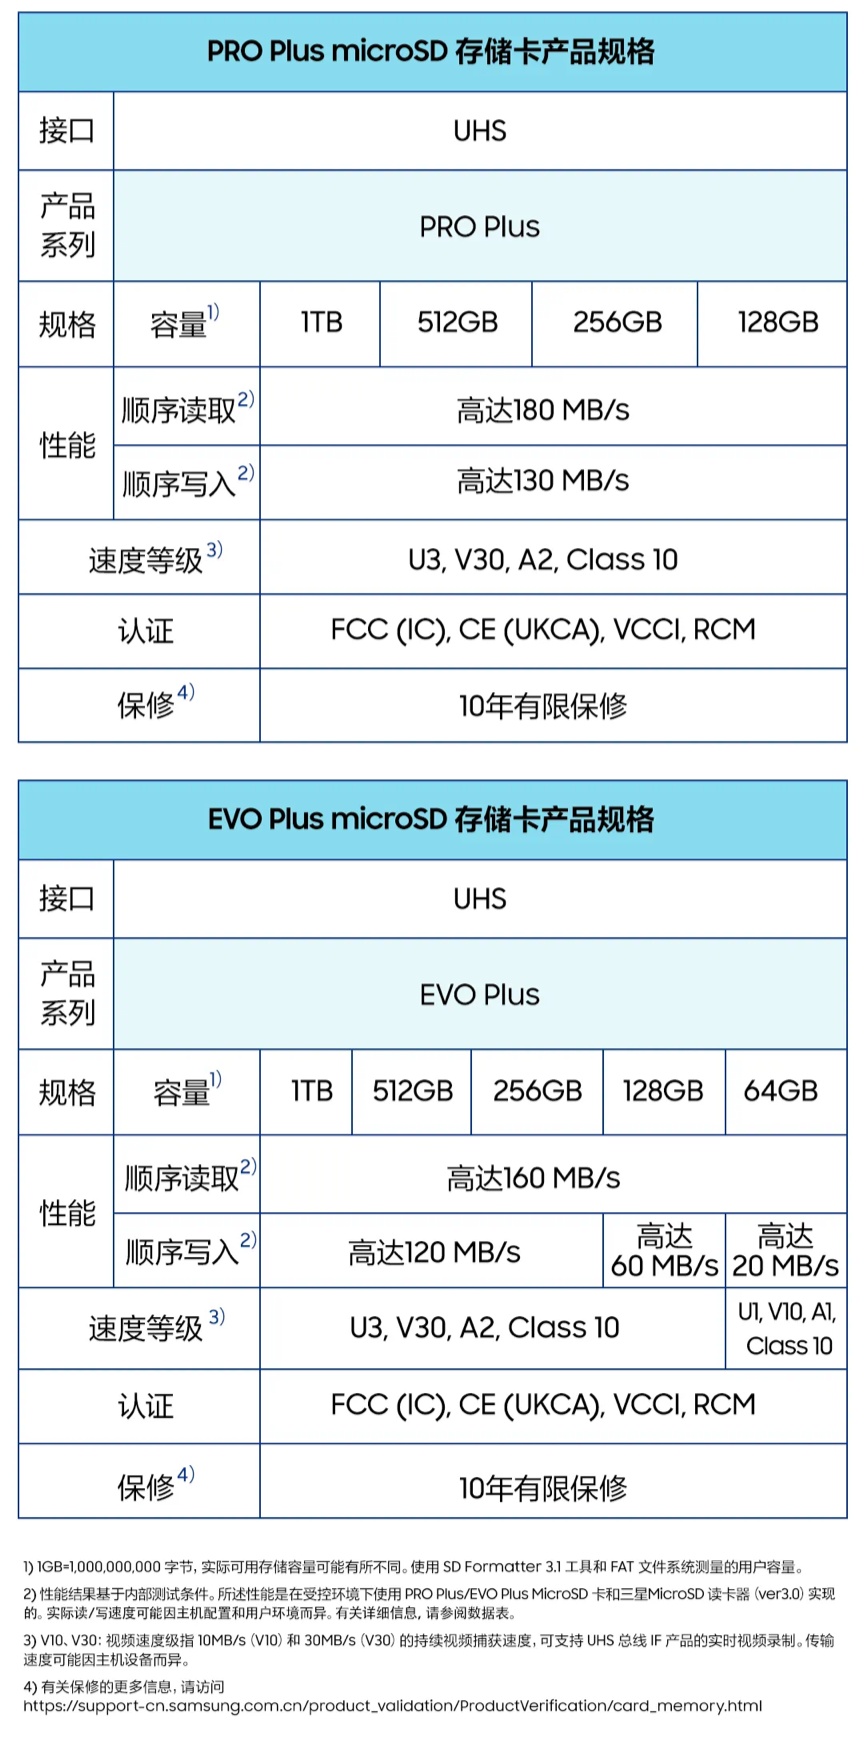 三星推出 1TB 版 EVO Plus / PRO Plus 存储卡：最高读 180MB/s、写 130MB/s